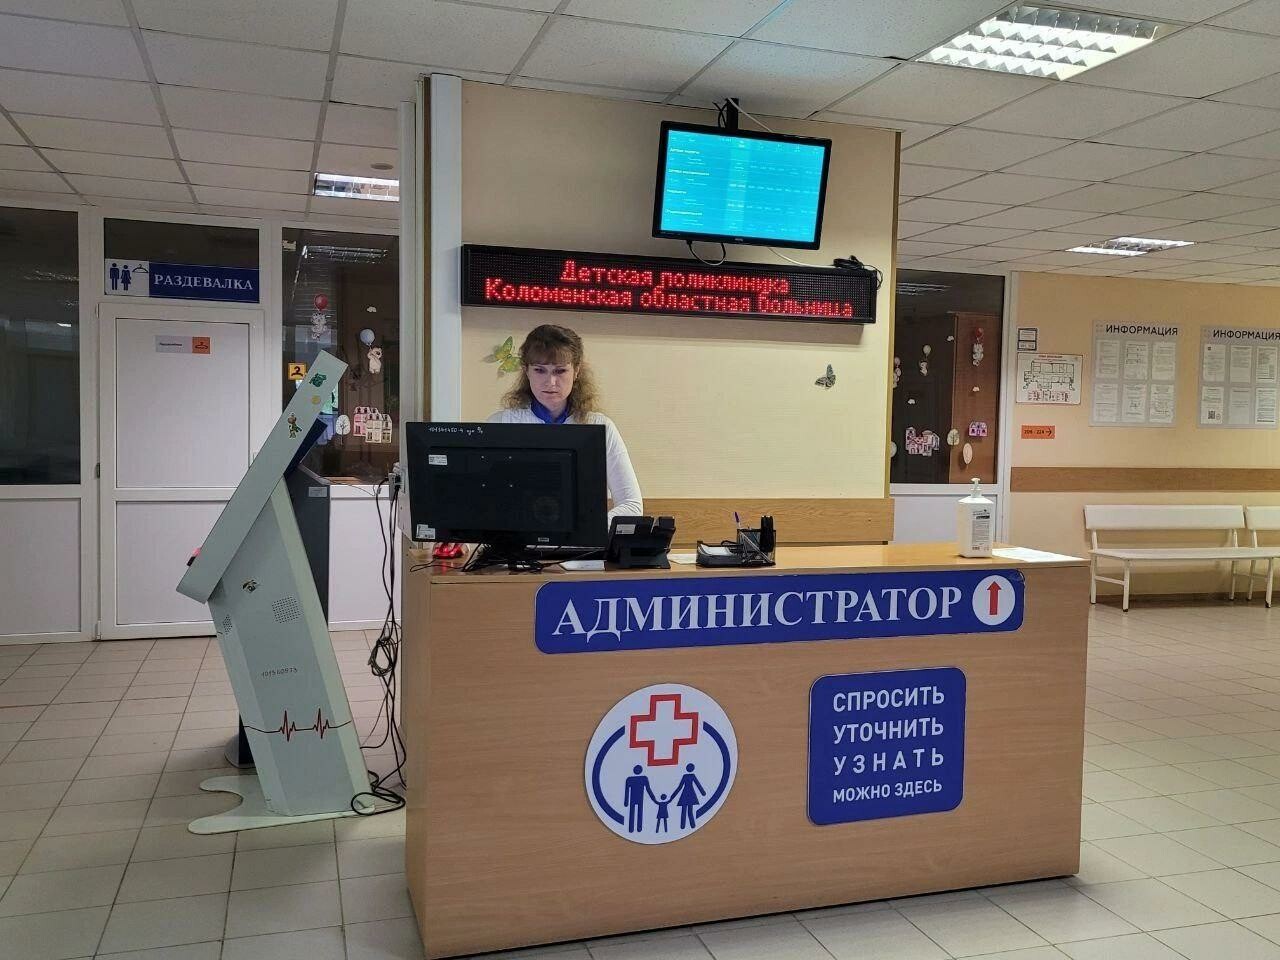 В педиатрической службе Коломенской областной больницы за последние годы произошли преобразования